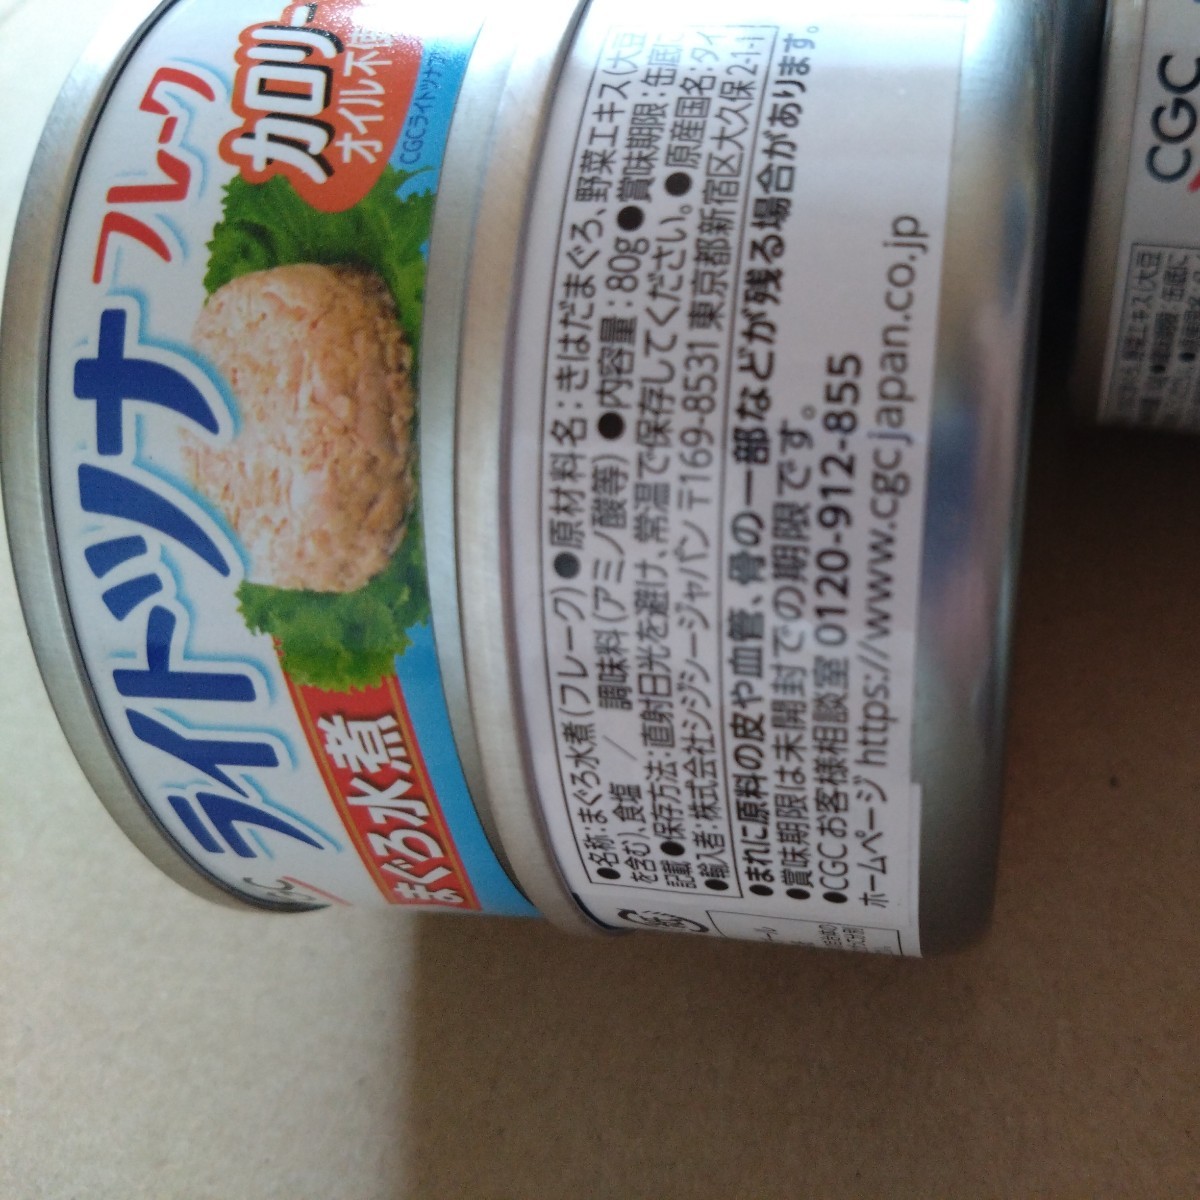 特別価格◆2600円商品■ライトツナ オイル不使用 カロリー3分の1 ■12個 _画像3